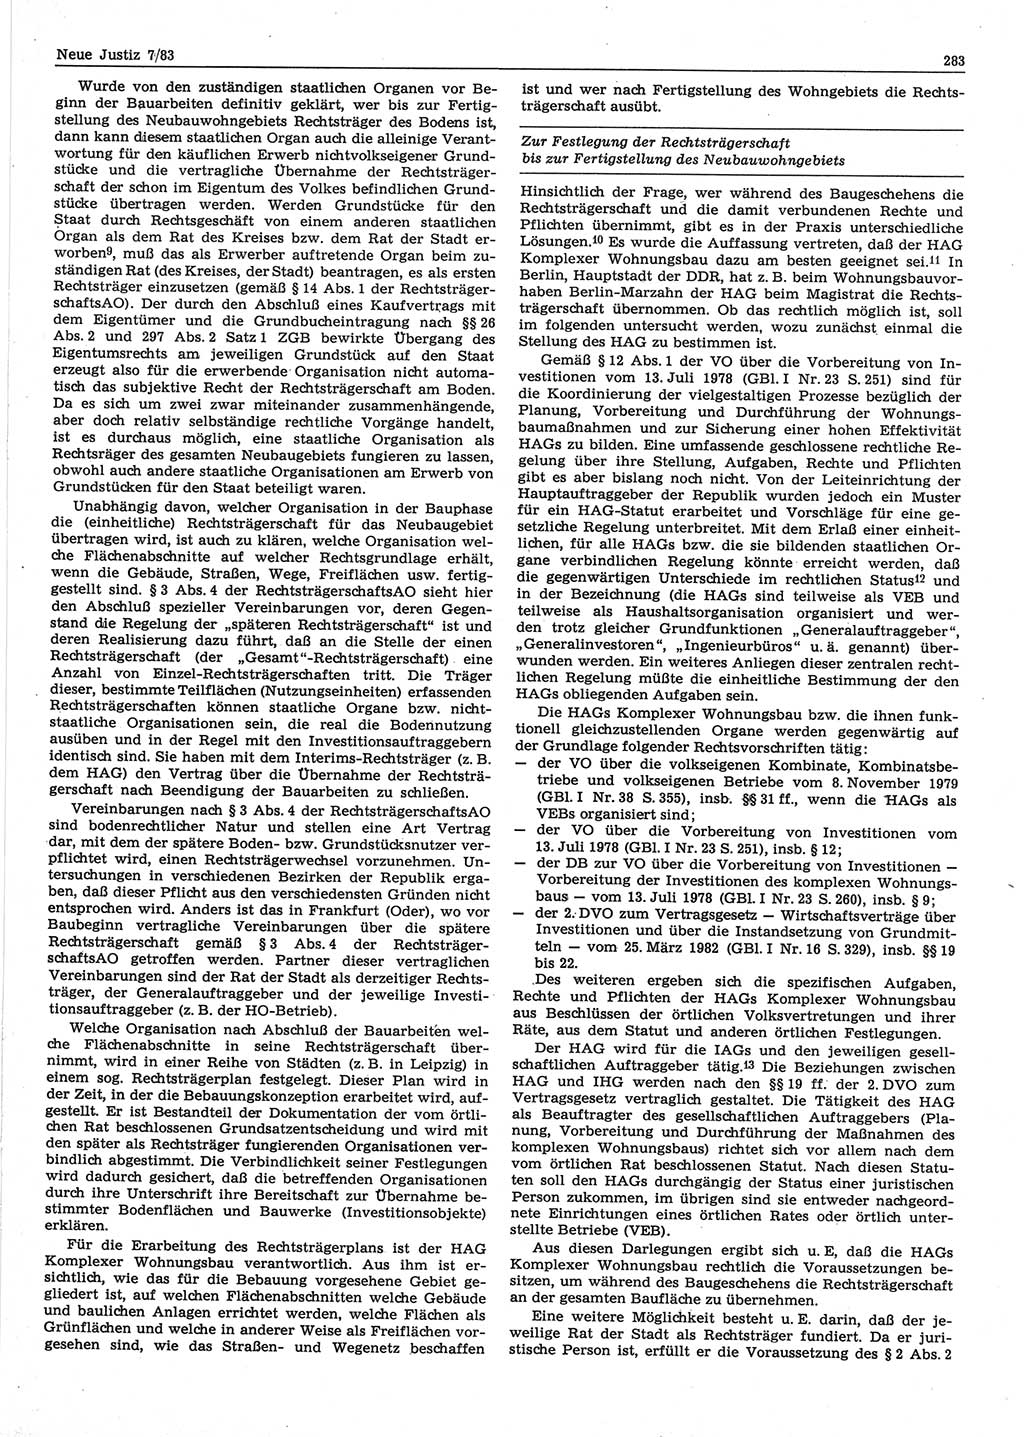 Neue Justiz (NJ), Zeitschrift für sozialistisches Recht und Gesetzlichkeit [Deutsche Demokratische Republik (DDR)], 37. Jahrgang 1983, Seite 283 (NJ DDR 1983, S. 283)